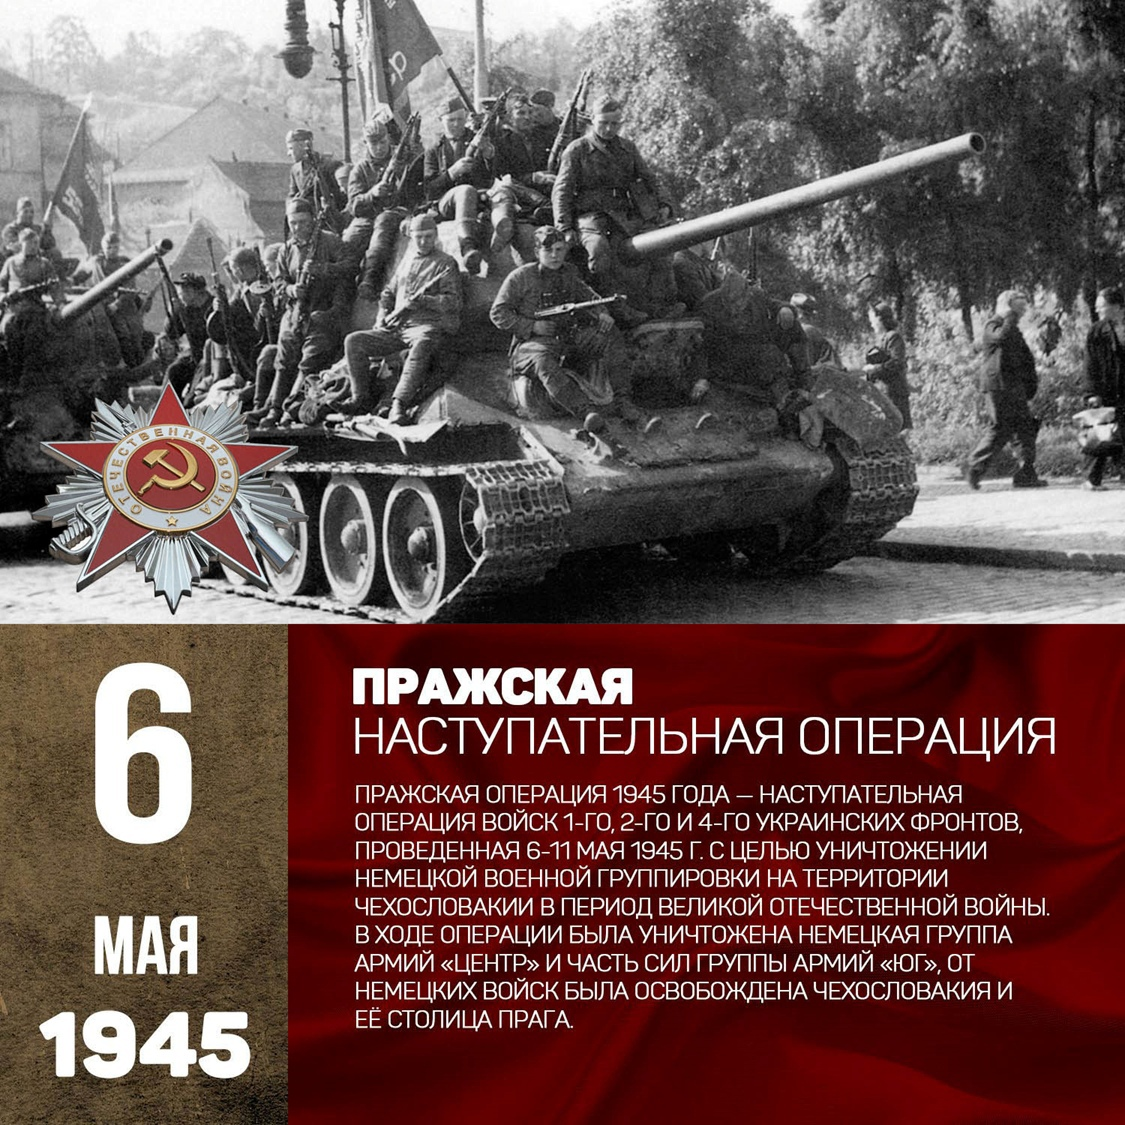 В каком году произошла стратегическая операция ркка. Трафарет Дата Великой Отечественной войны. В каком году произошла стратегическая операция РКК.